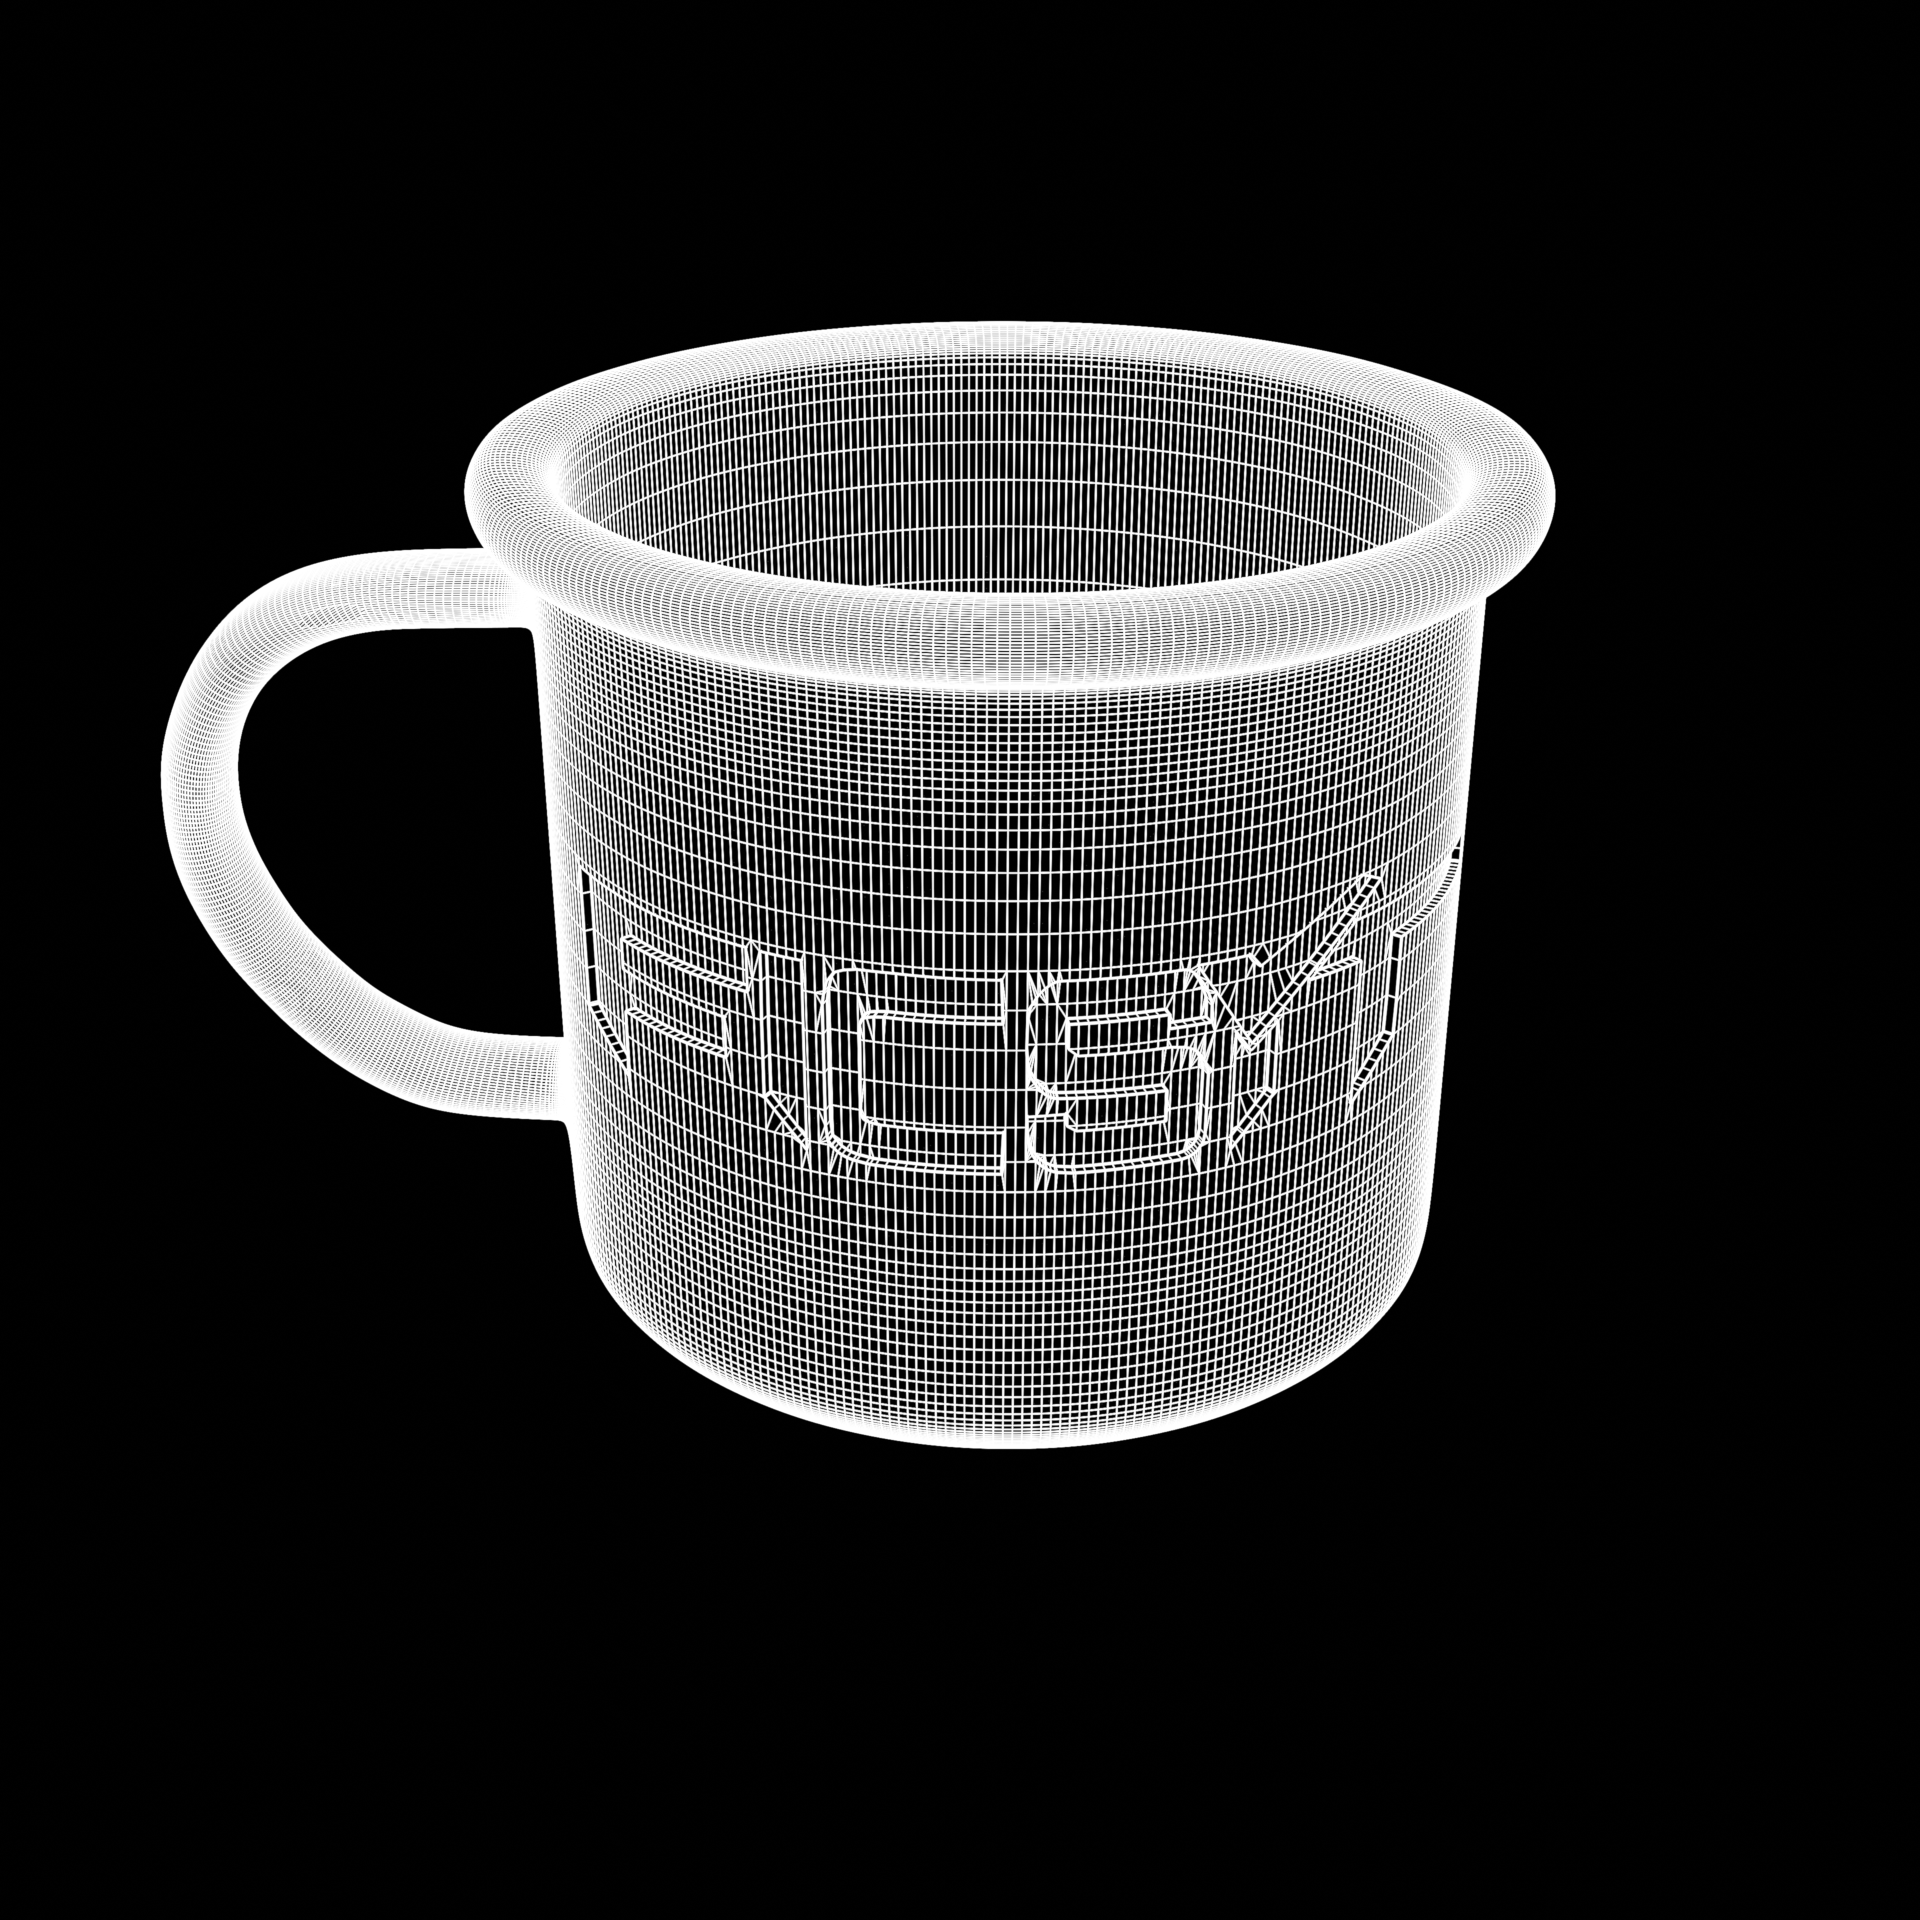 Wireframe.png Download STL file SATISFACTORY - Pioneers Cup • 3D printing design, Wikus3D